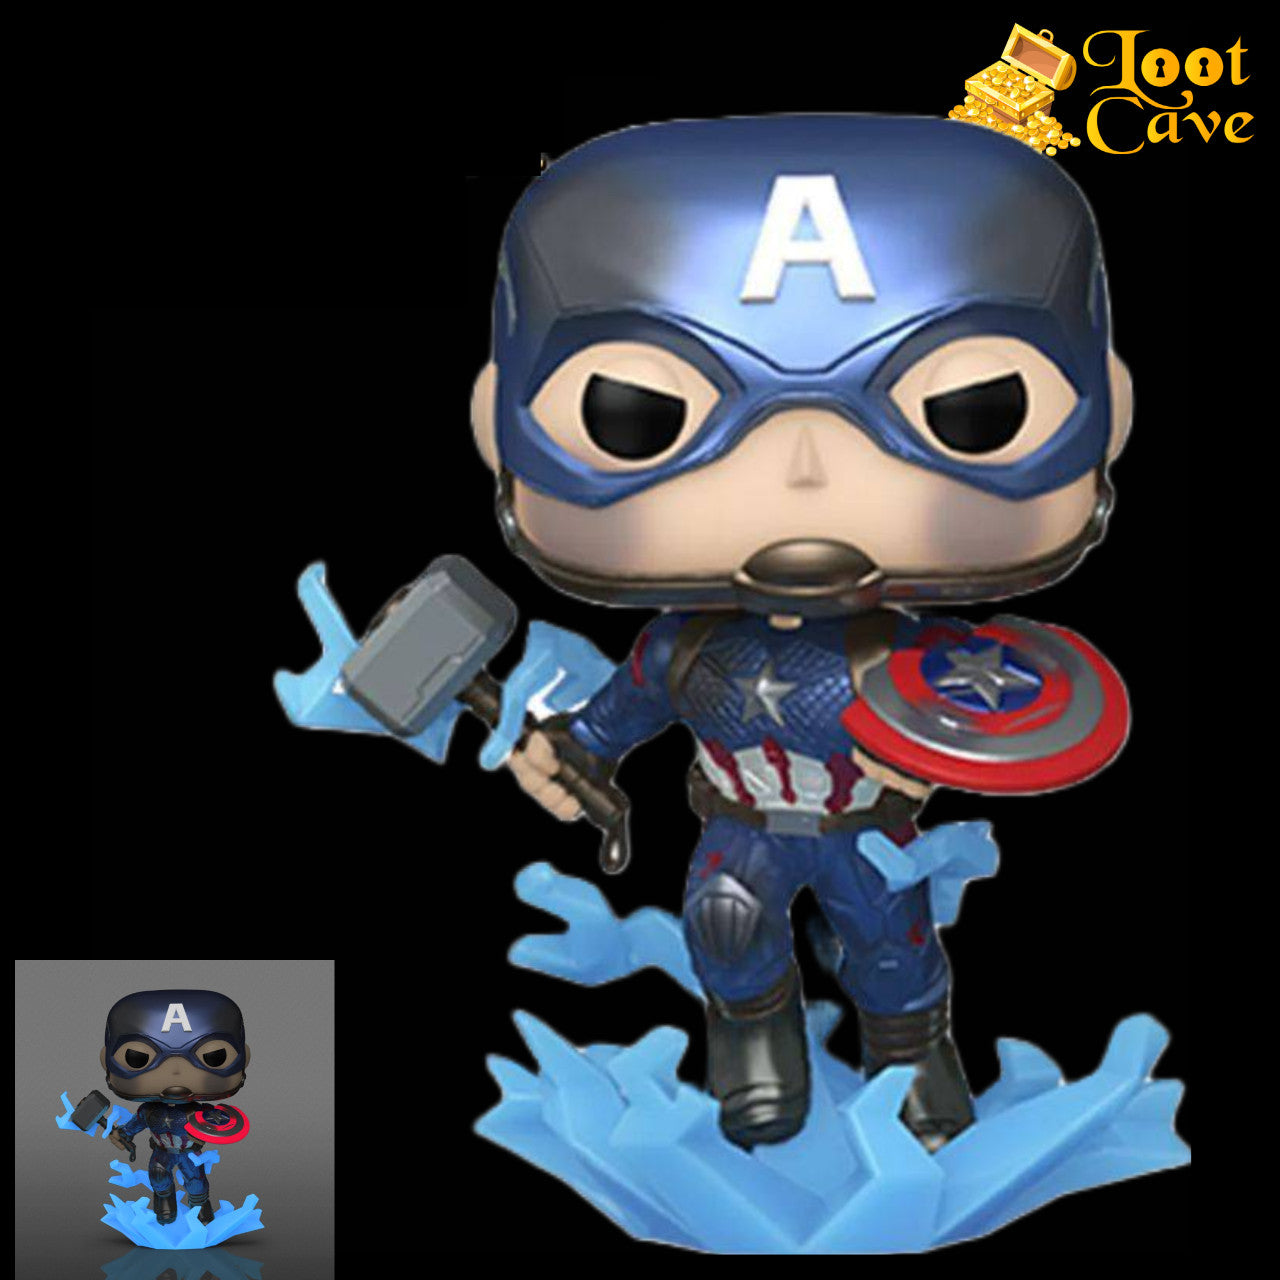 Funko Pop! Avengers 4: Endgame - Captain America with Mjolnir Metallic